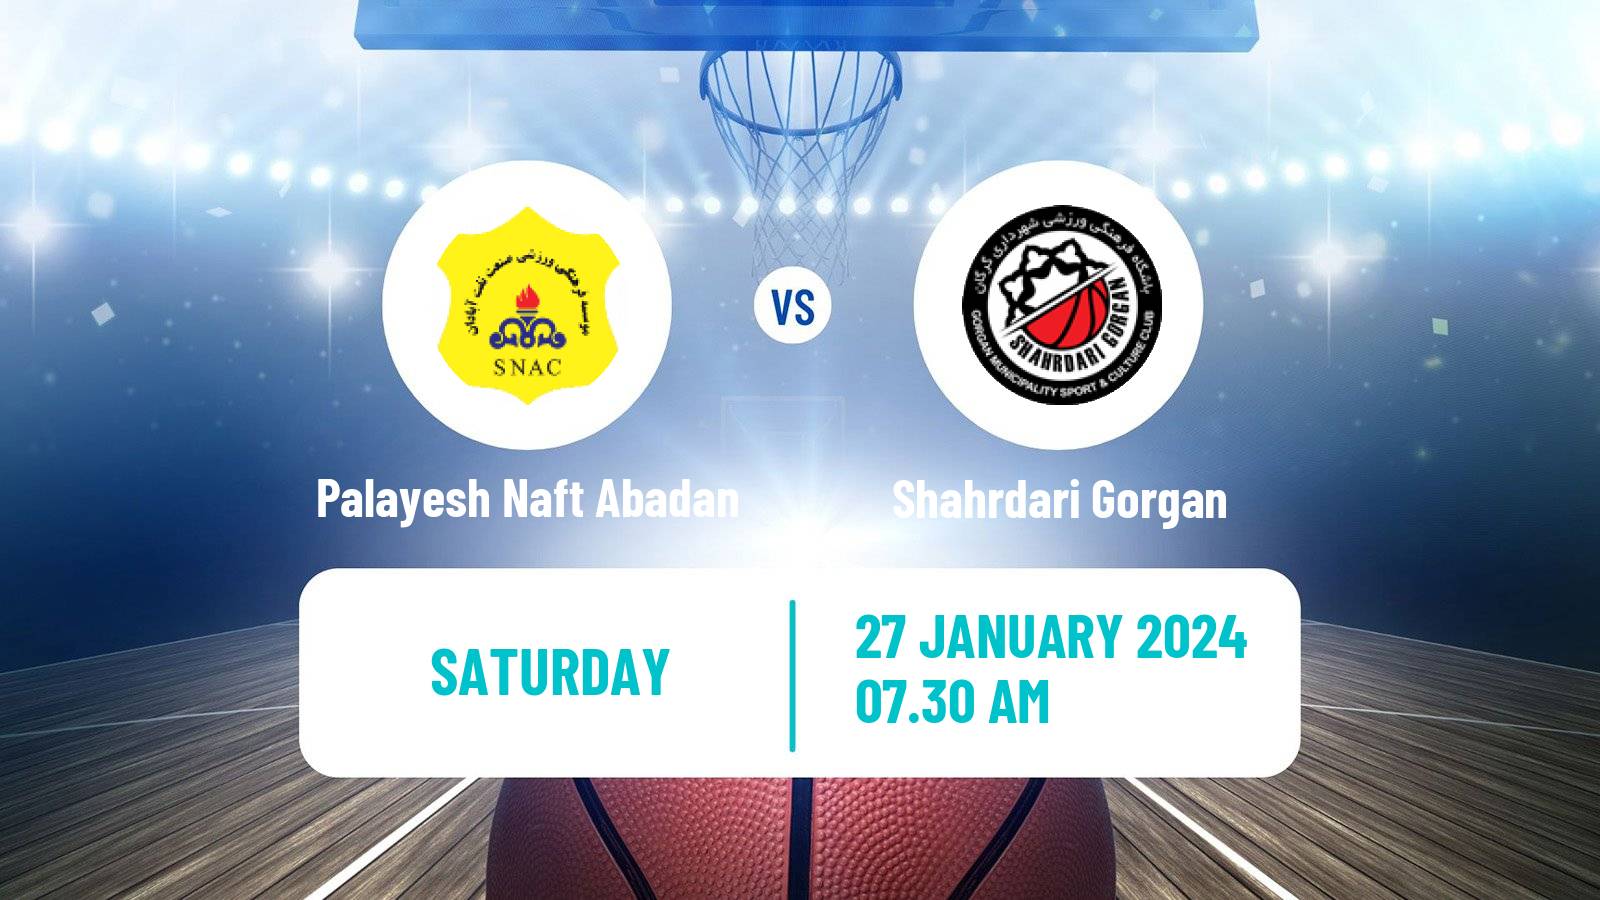 Basketball Iran Super League Basketball Palayesh Naft Abadan - Shahrdari Gorgan